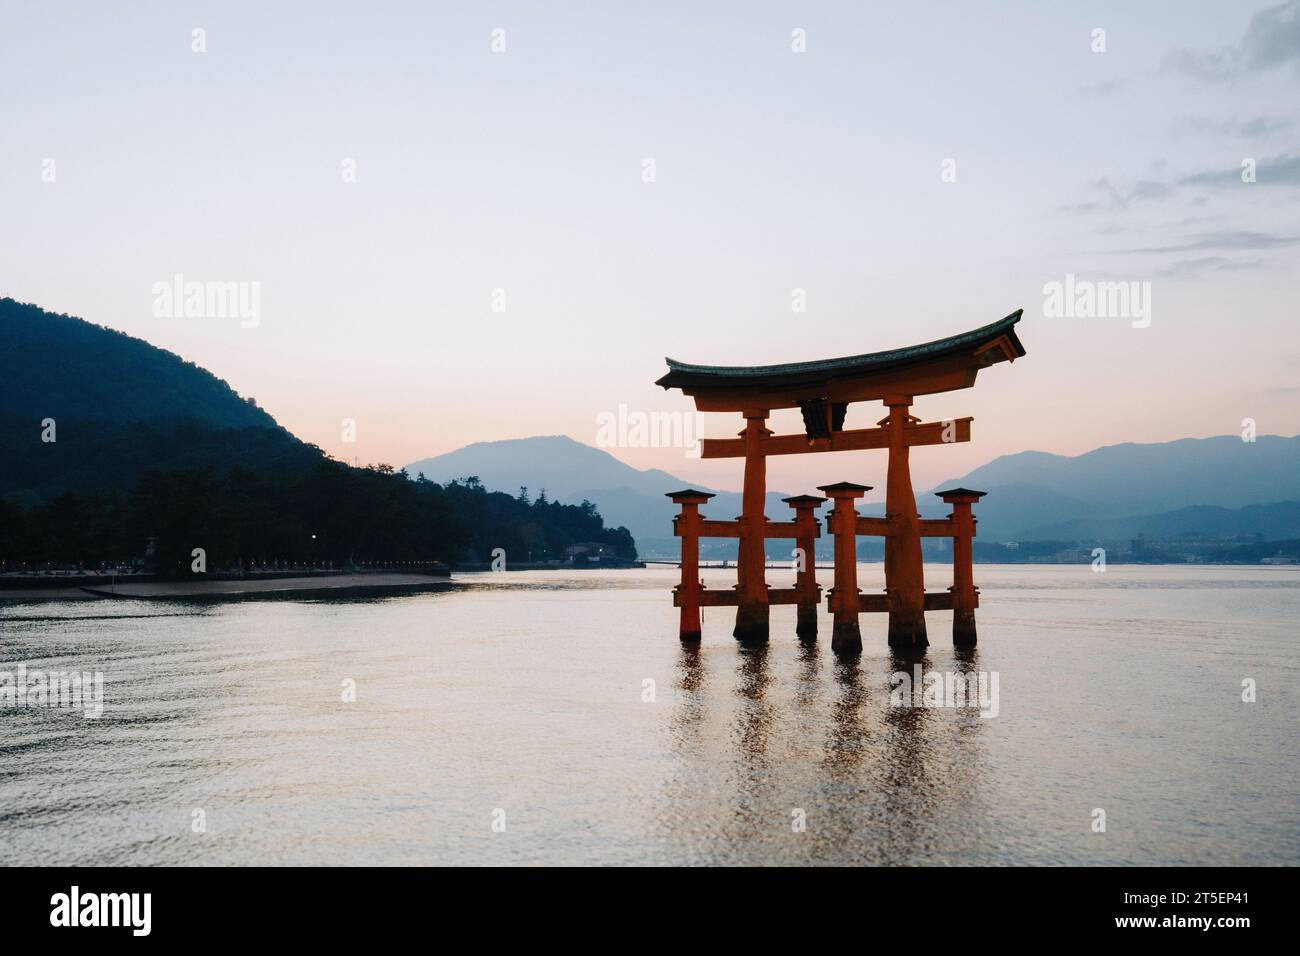 The Itsukushima Jinja Otorii (Grand Torii Gate) at sunset, Miyajima Island, Hiroshima, Japan Stock Photo